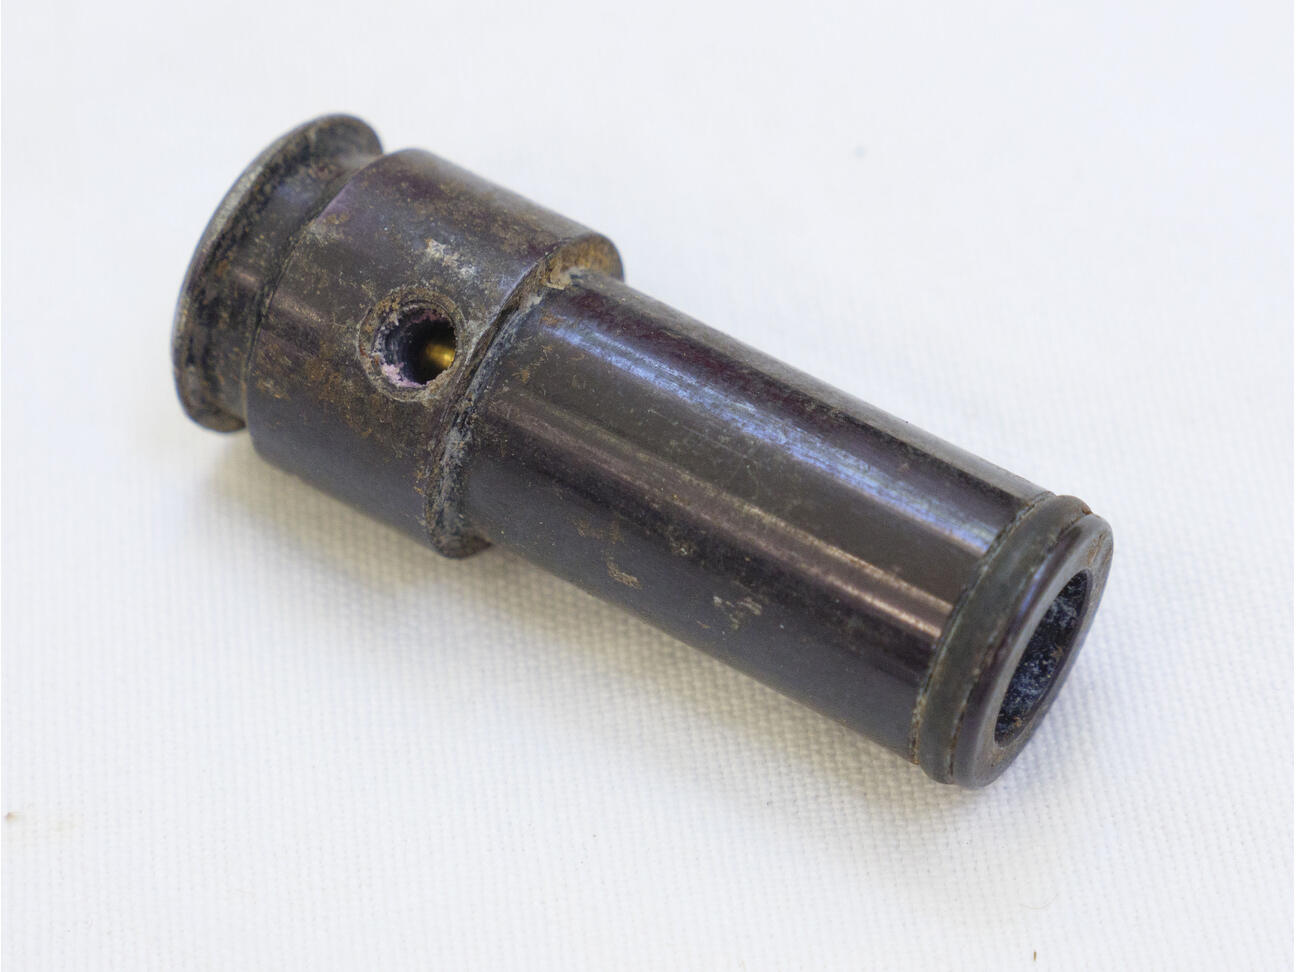 Corroded Trracer or Maverick adjustable bolt